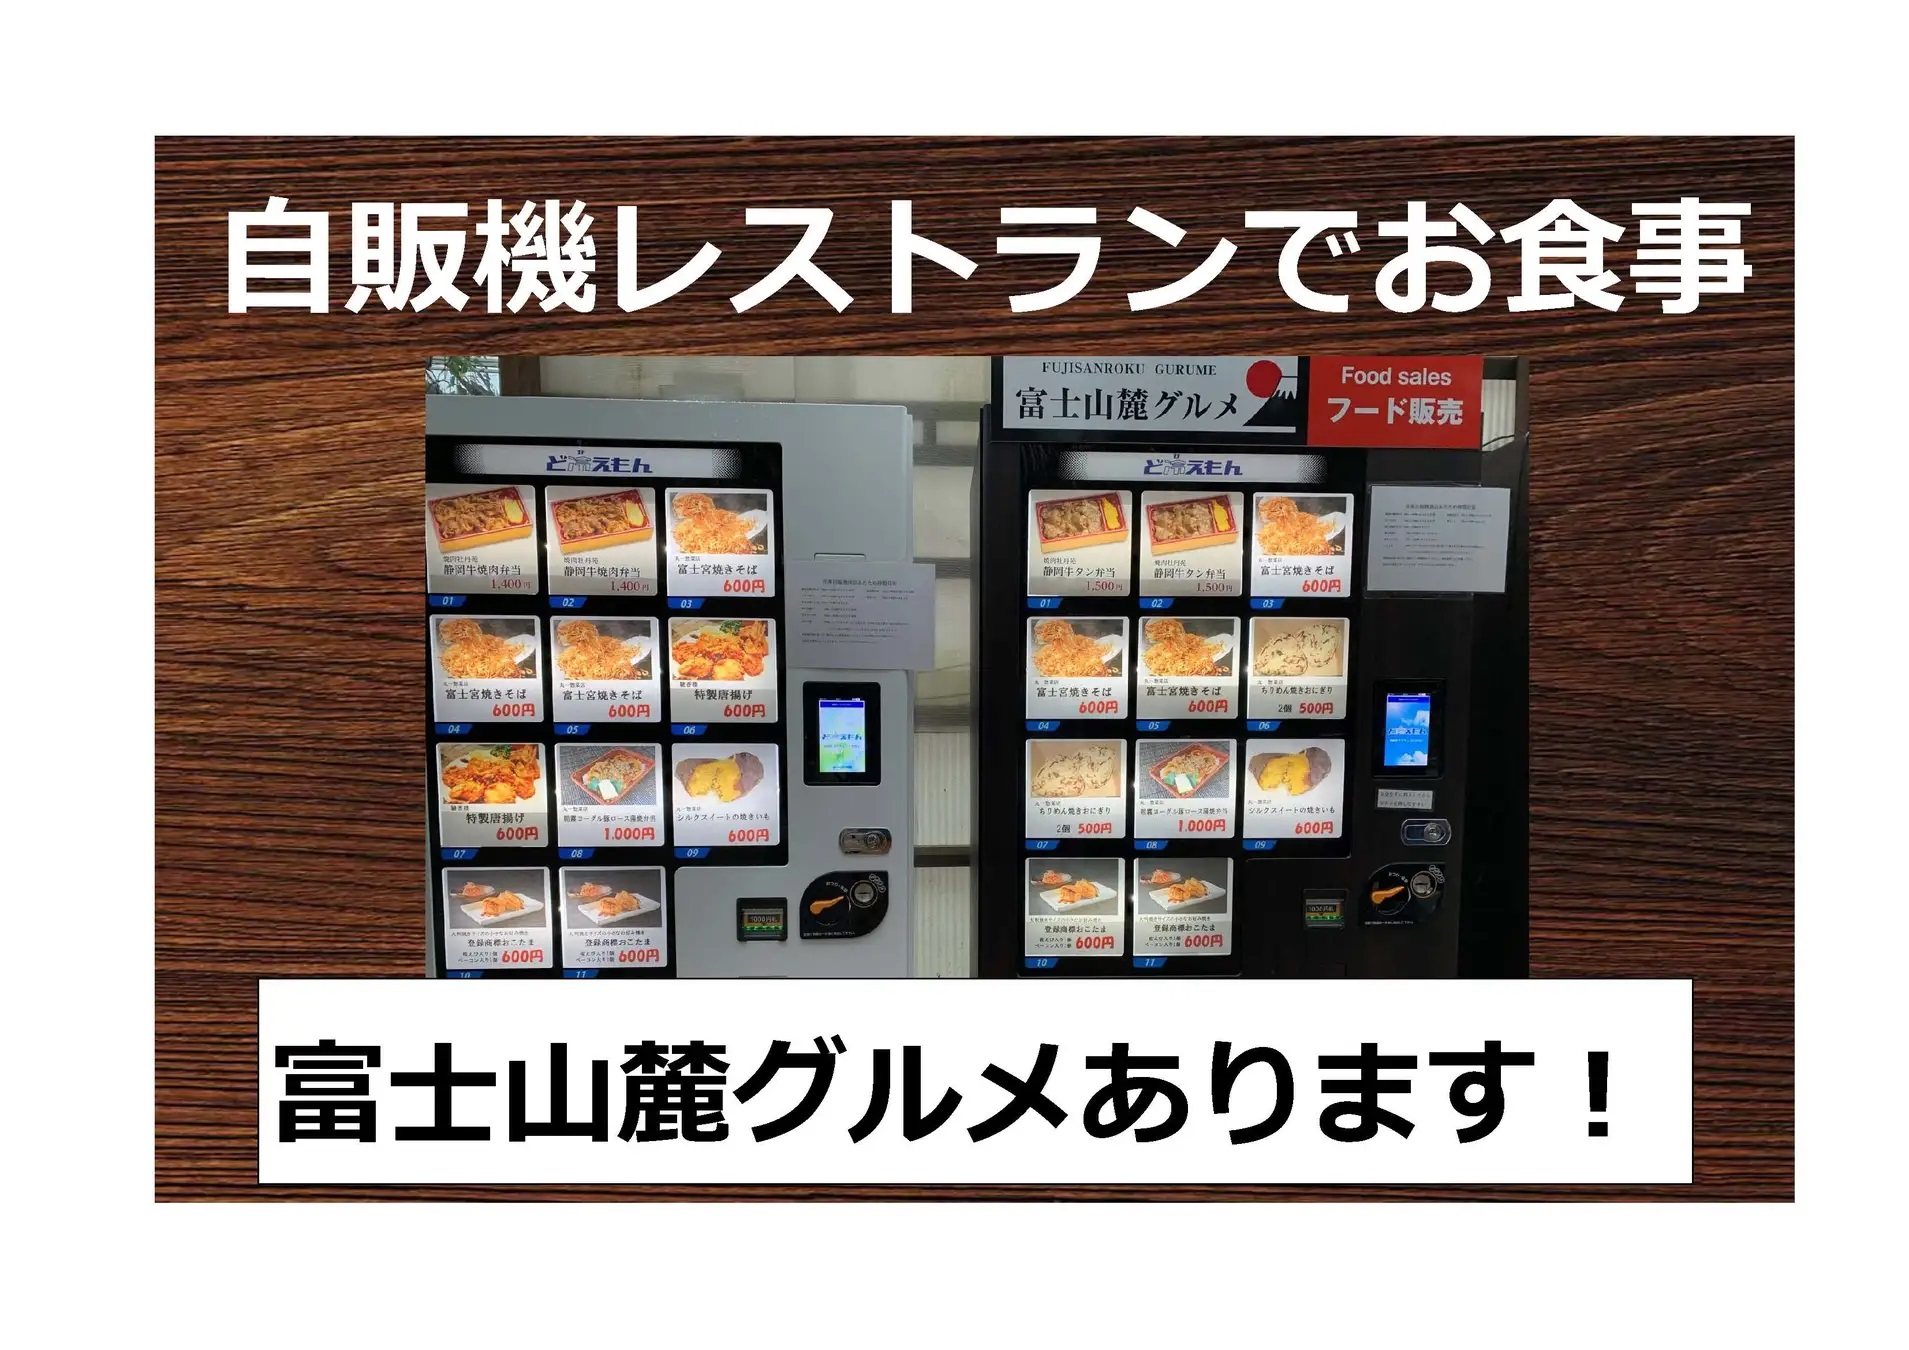 富士花鳥園 冷凍自販機 ど冷えもん で 富士宮焼きそば 販売